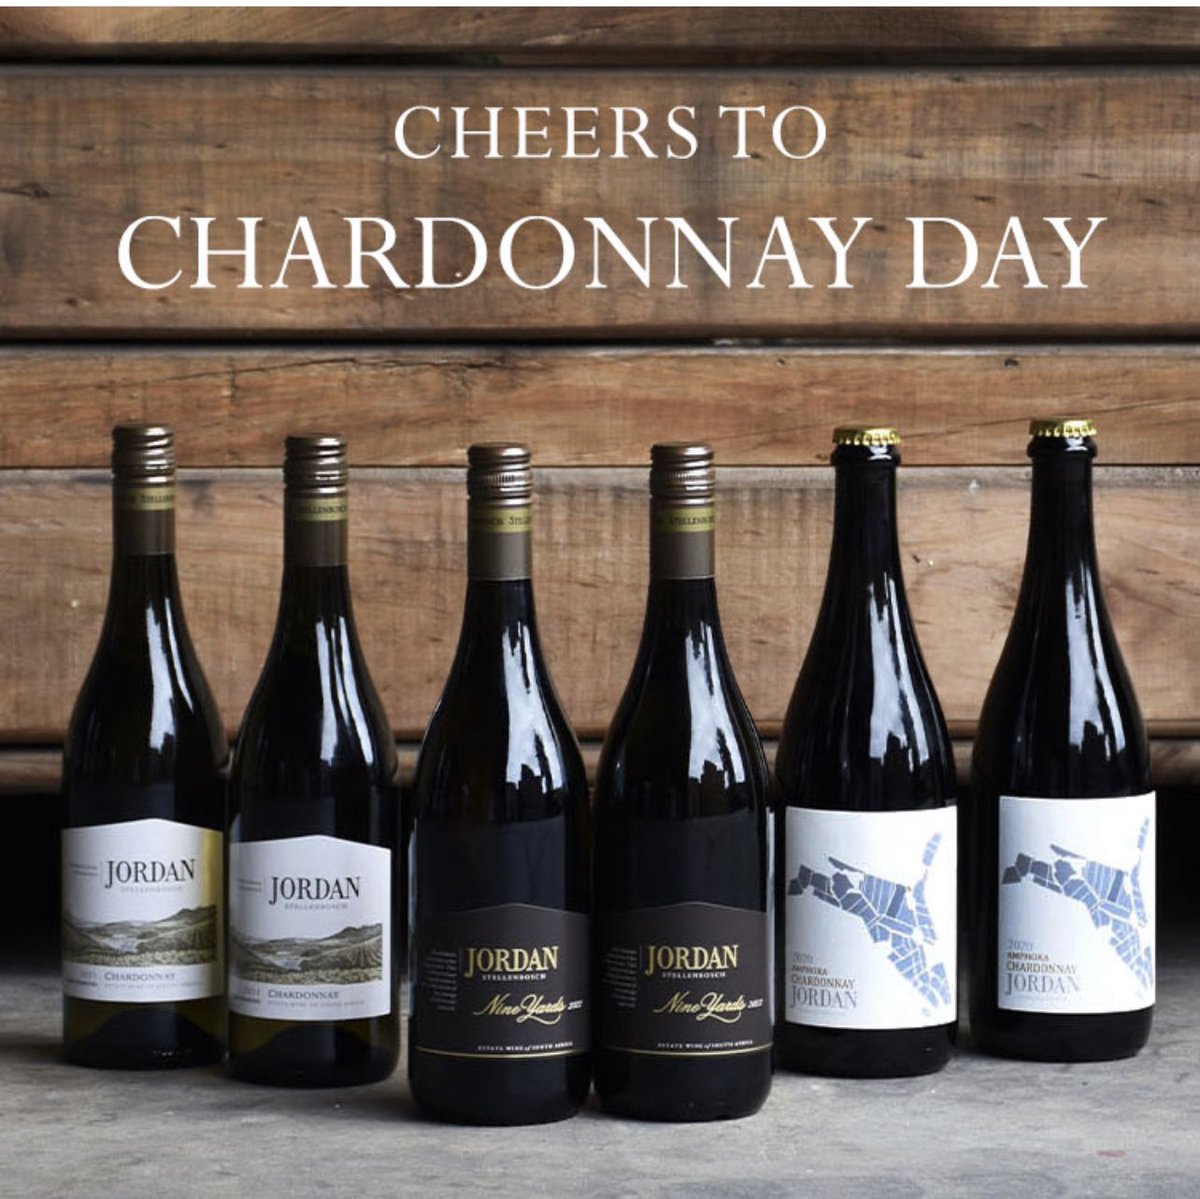 Surely every day should be #ChardonnayDay #InternationalChardonnayDay 
Yes!